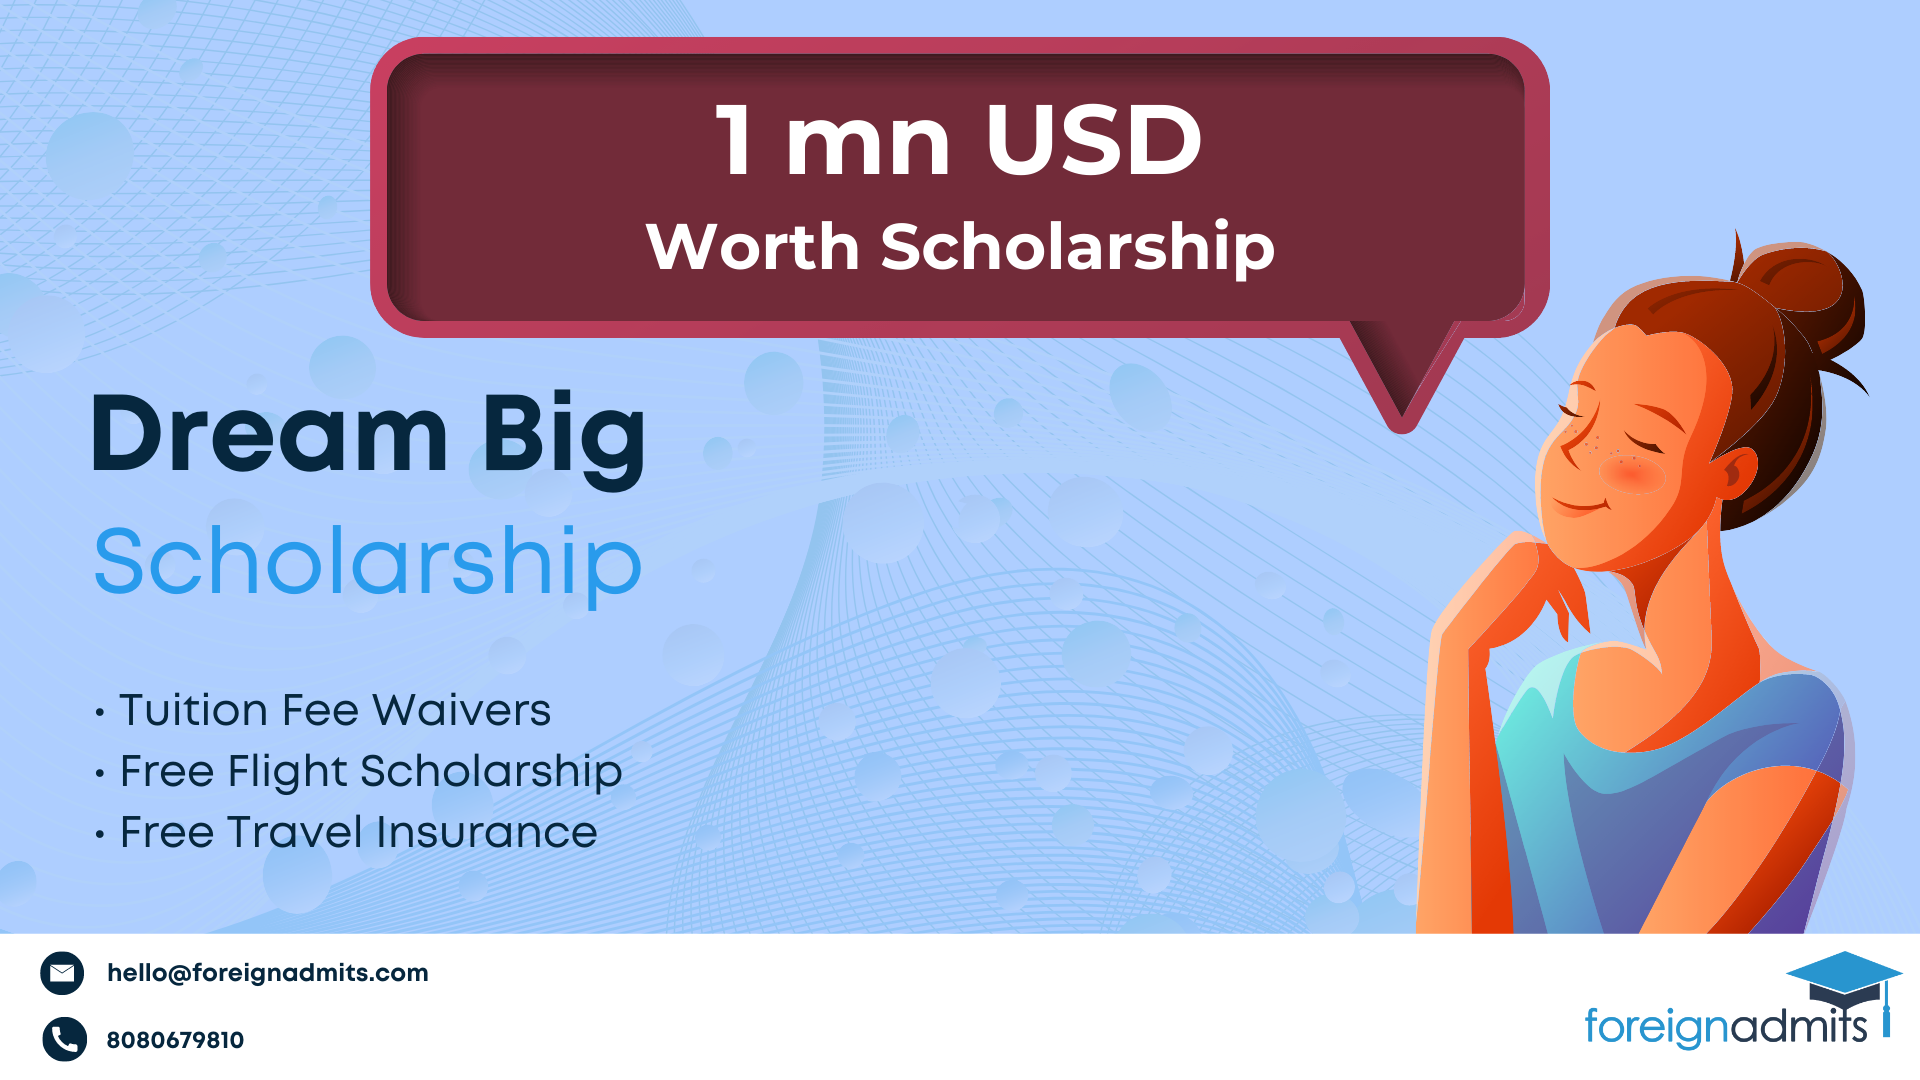 Dream Big Scholarship